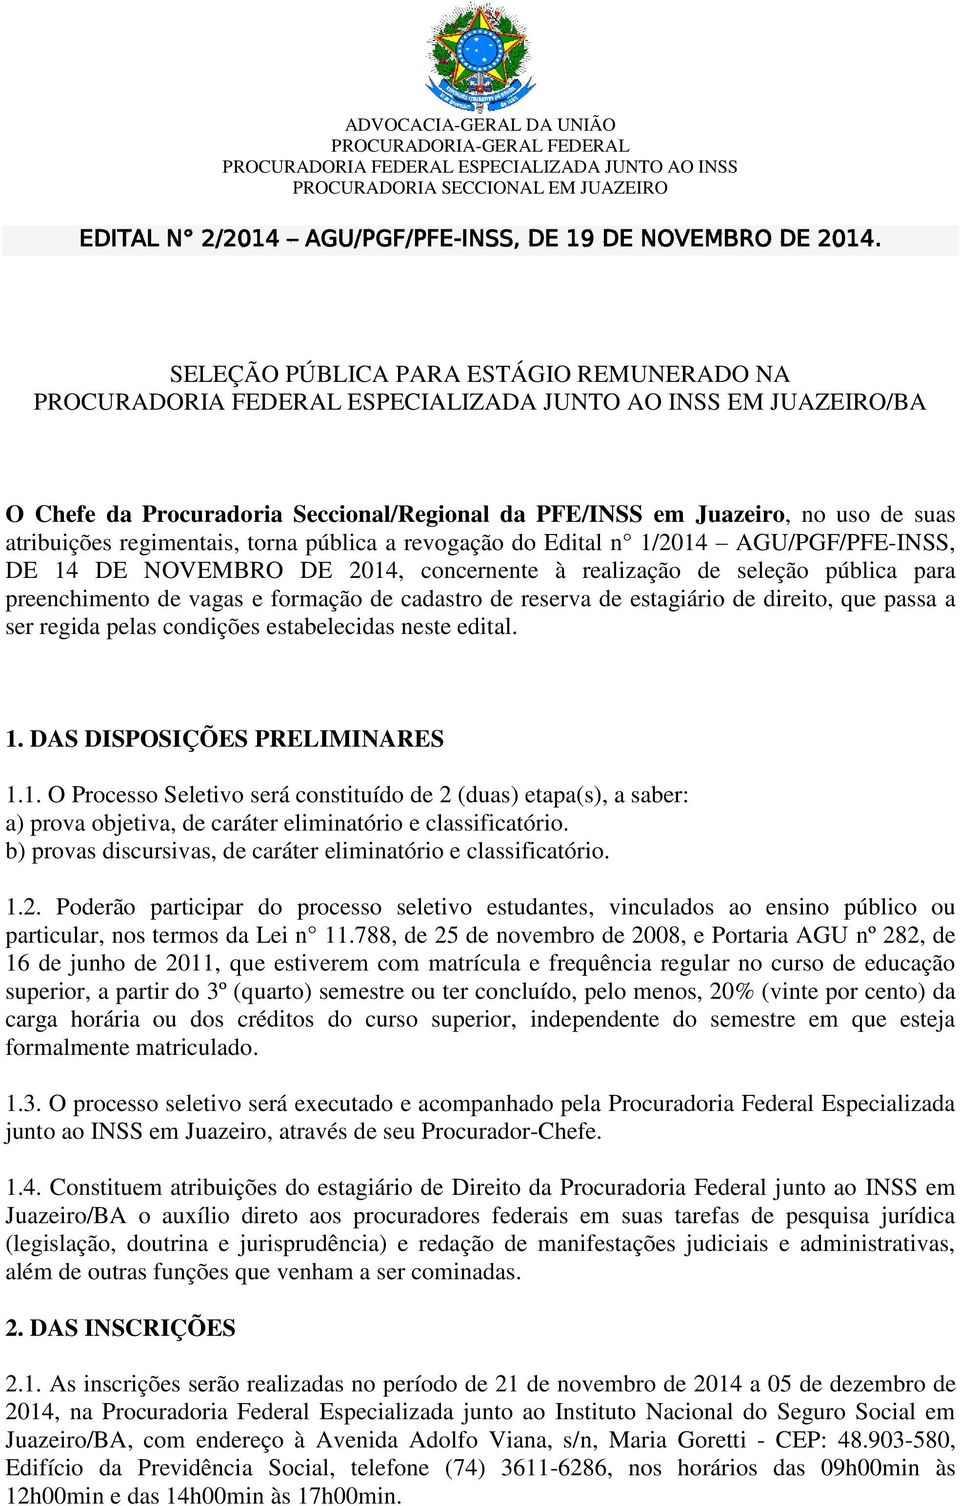 Edital n 1/2014 AGU/PGF/PFE-INSS, DE 14 DE NOVEMBRO DE 2014, concernente à realização de seleção pública para preenchimento de vagas e formação de cadastro de reserva de estagiário de direito, que